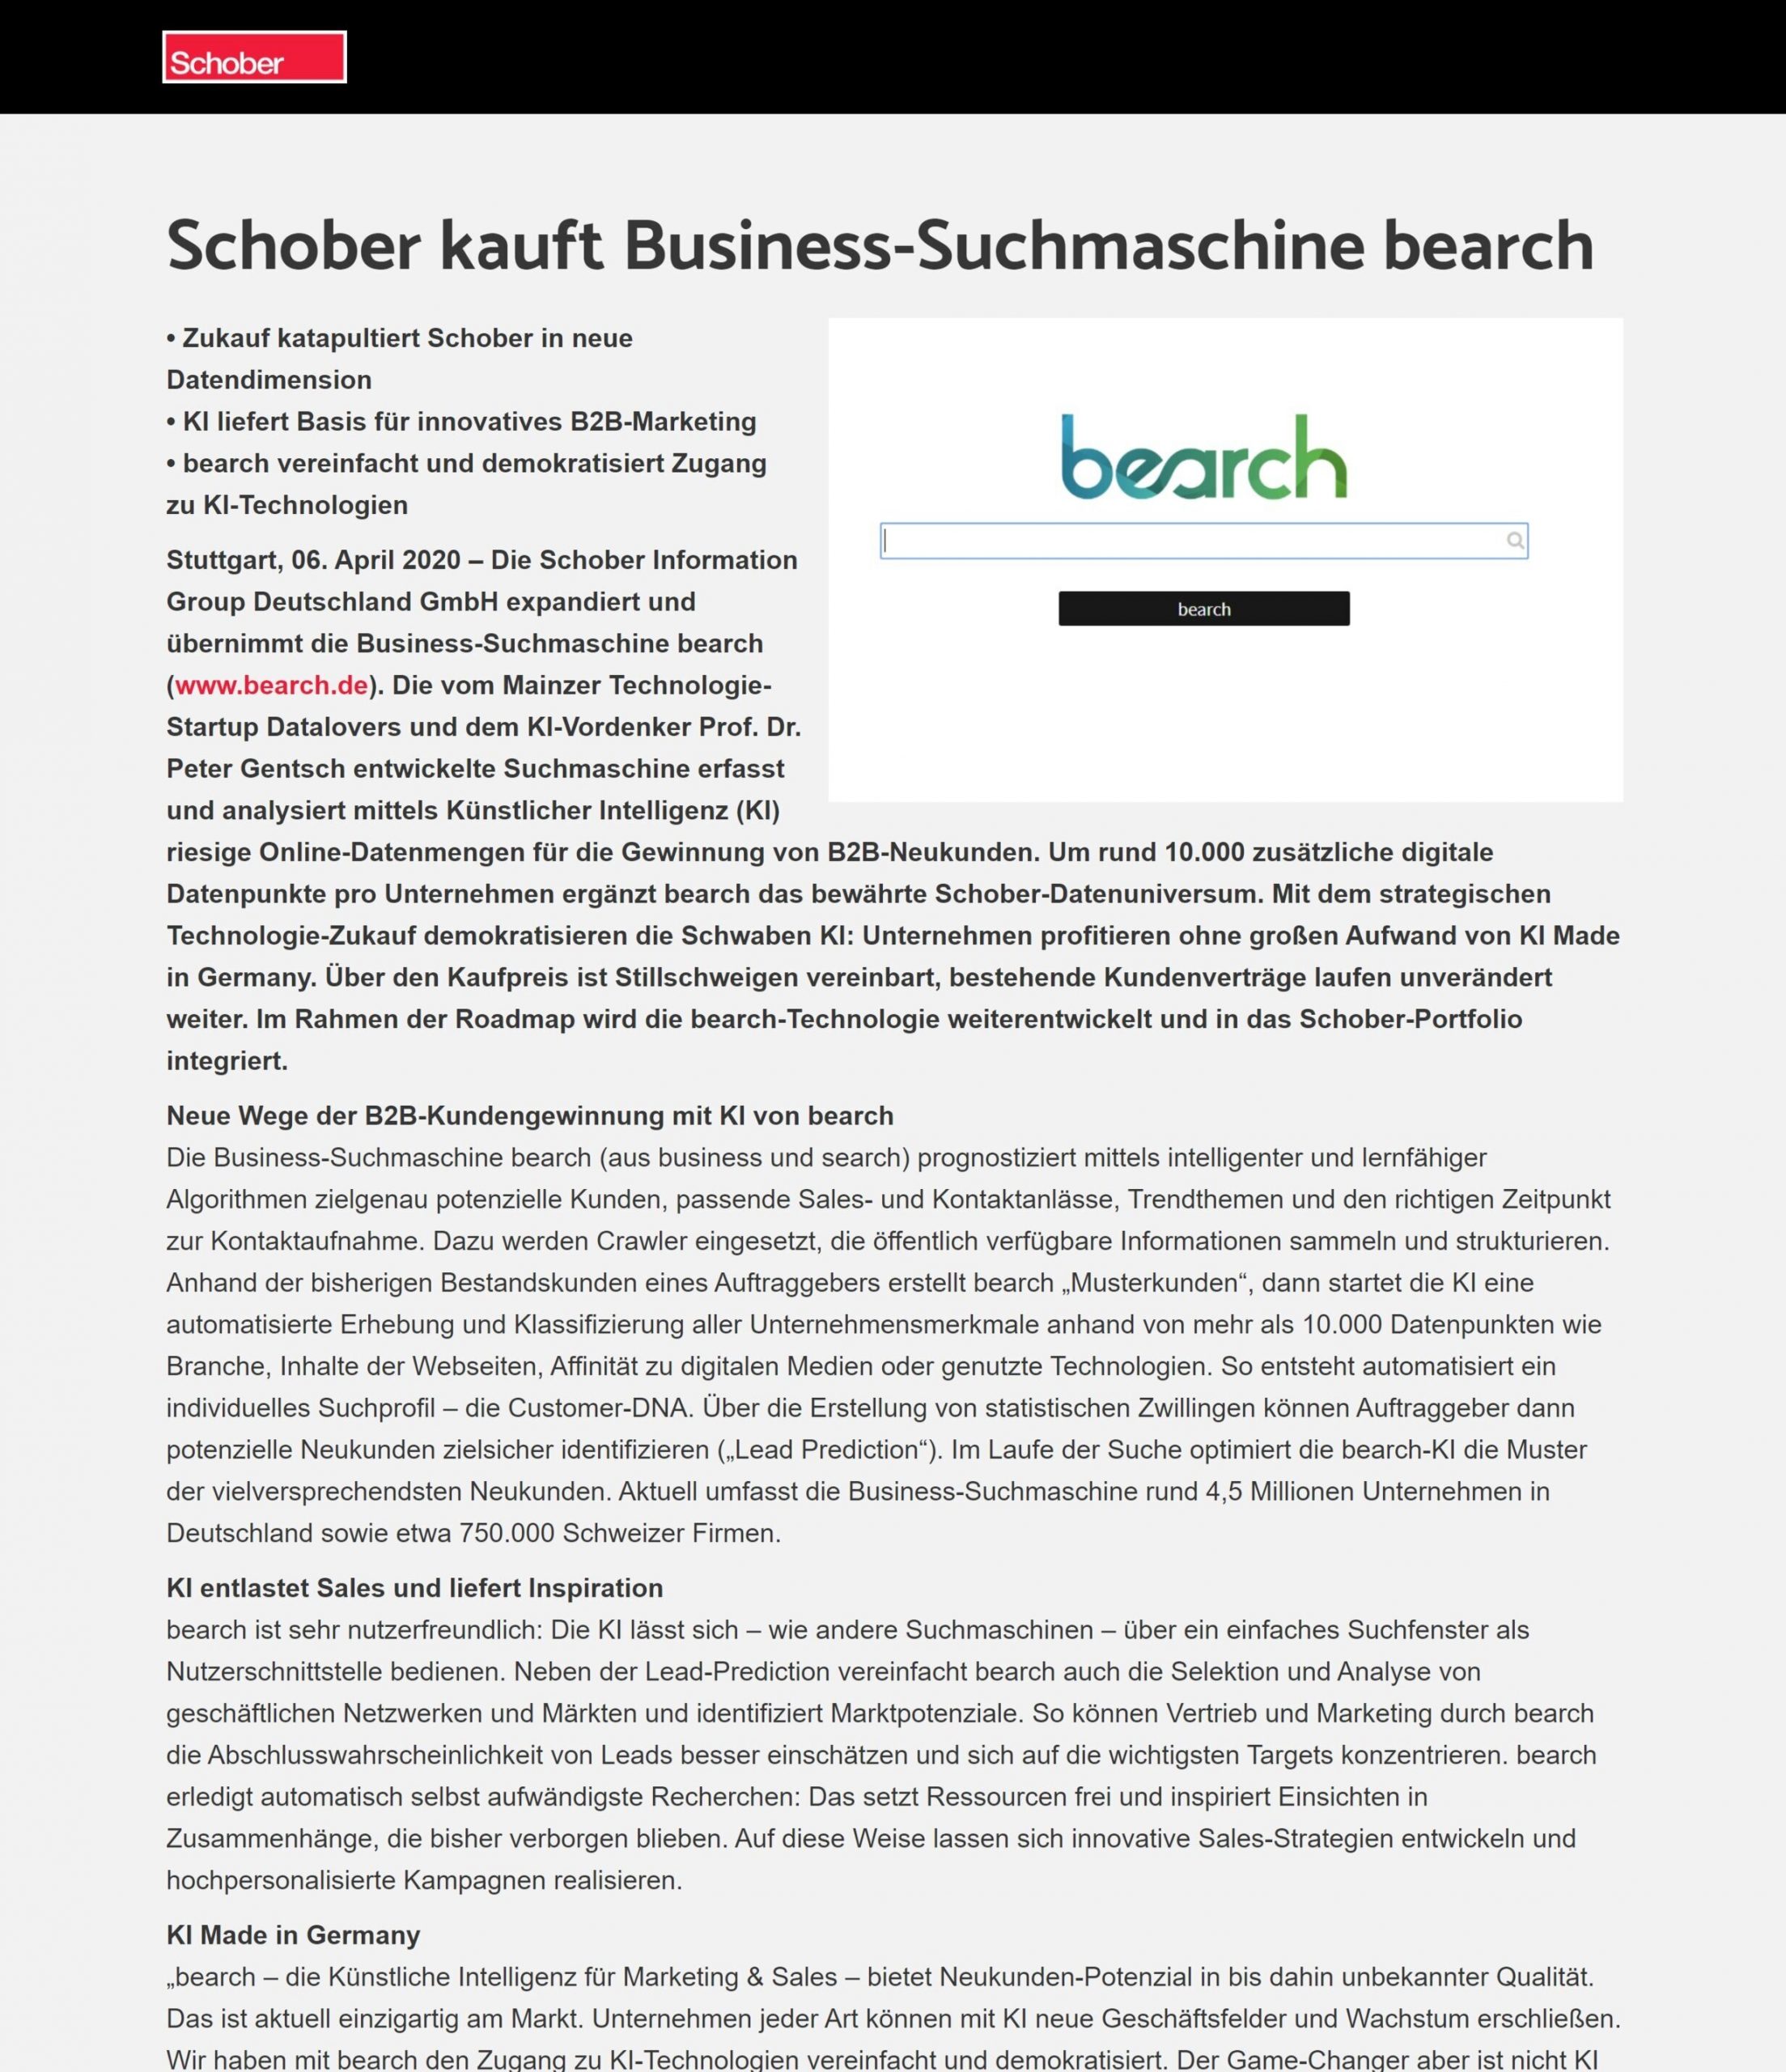 Peter Gentsch sells Bearch to Schober